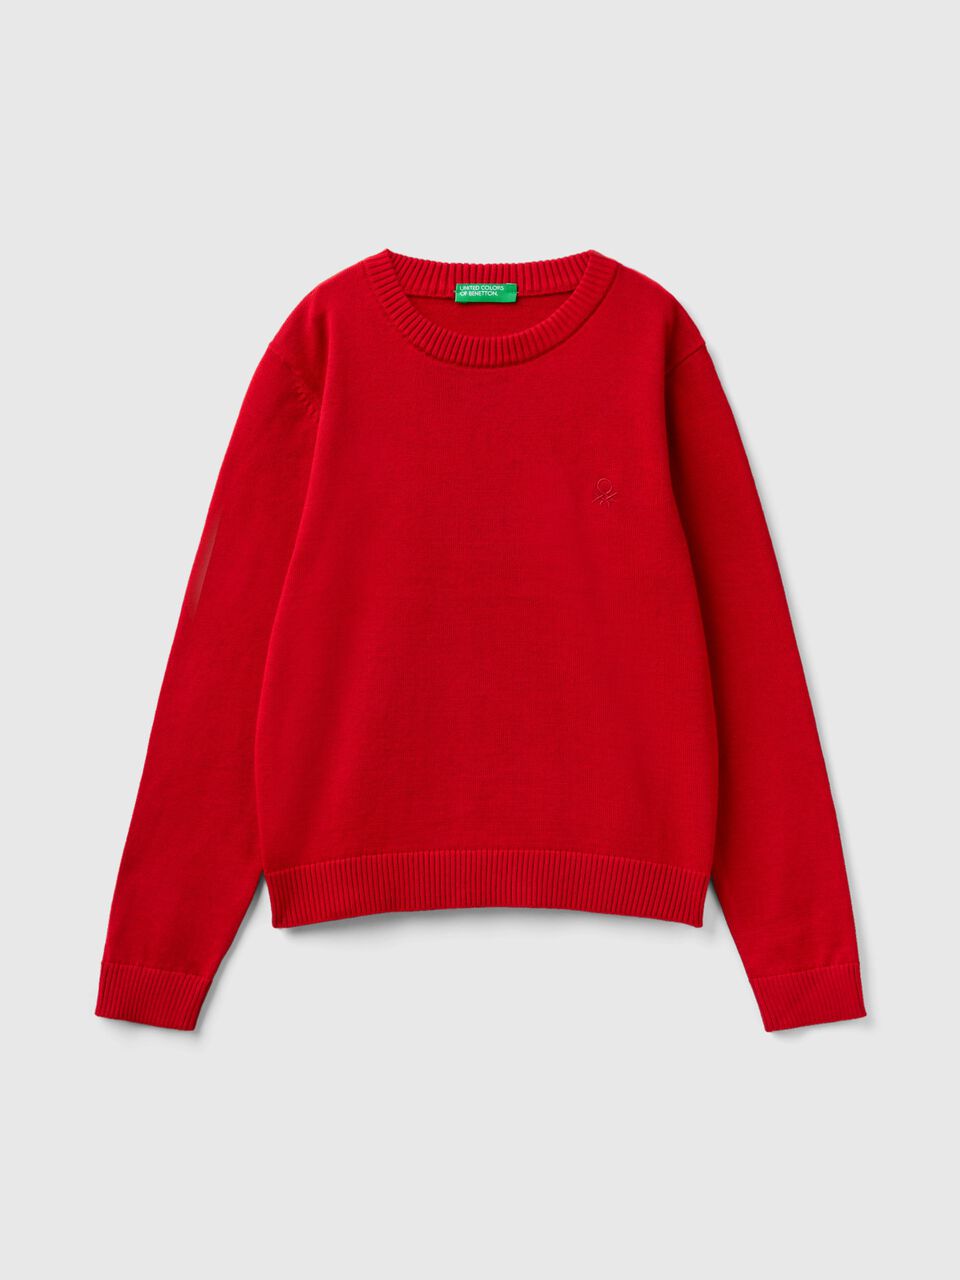 Baumwolle | aus Benetton mit Pullover Rot 100% - Rundausschnitt